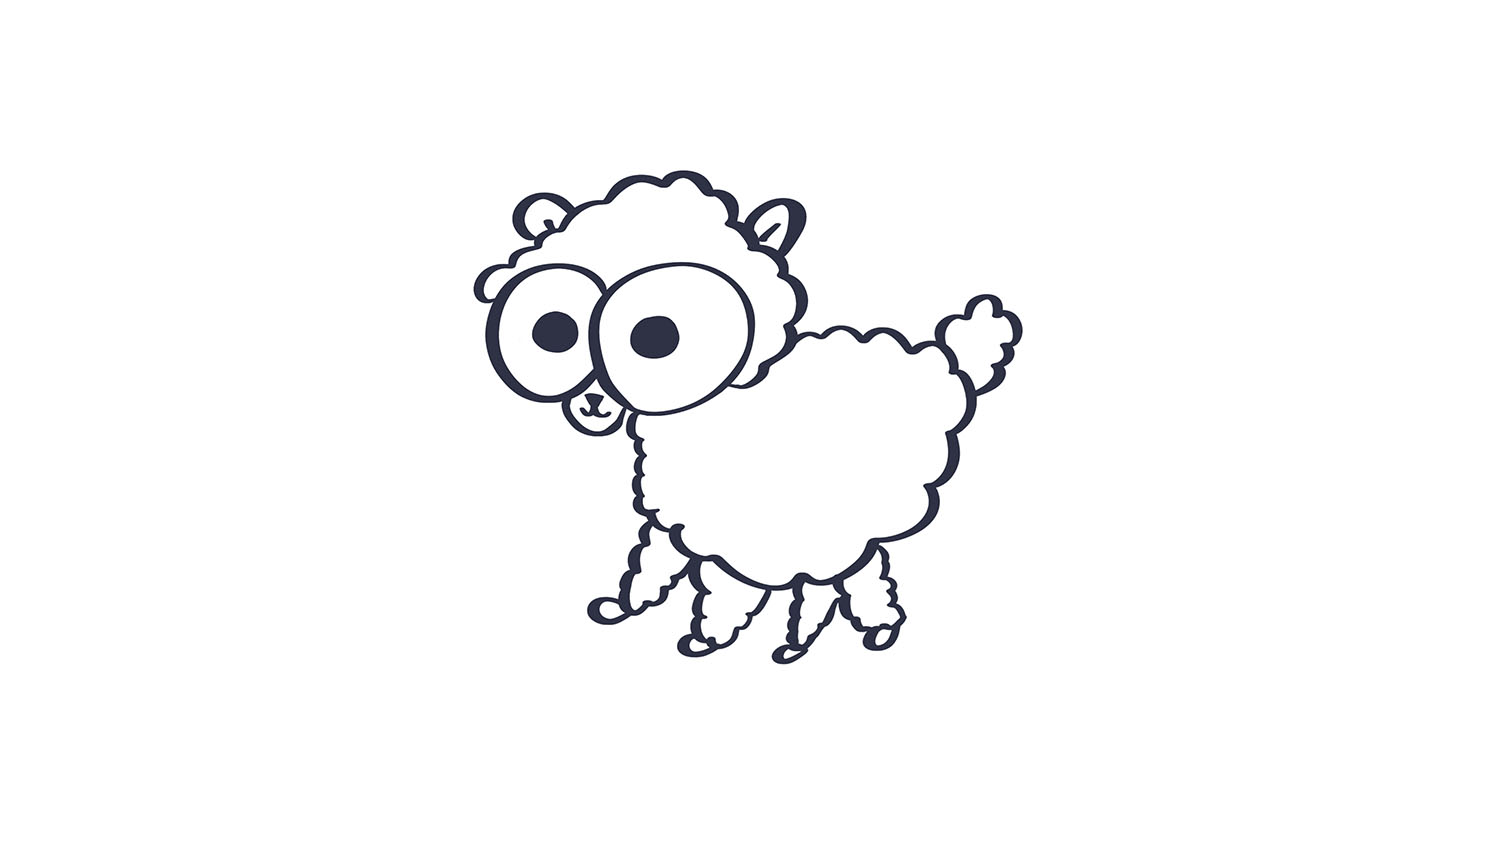 16. Oveja / Sheep. 103dibujos